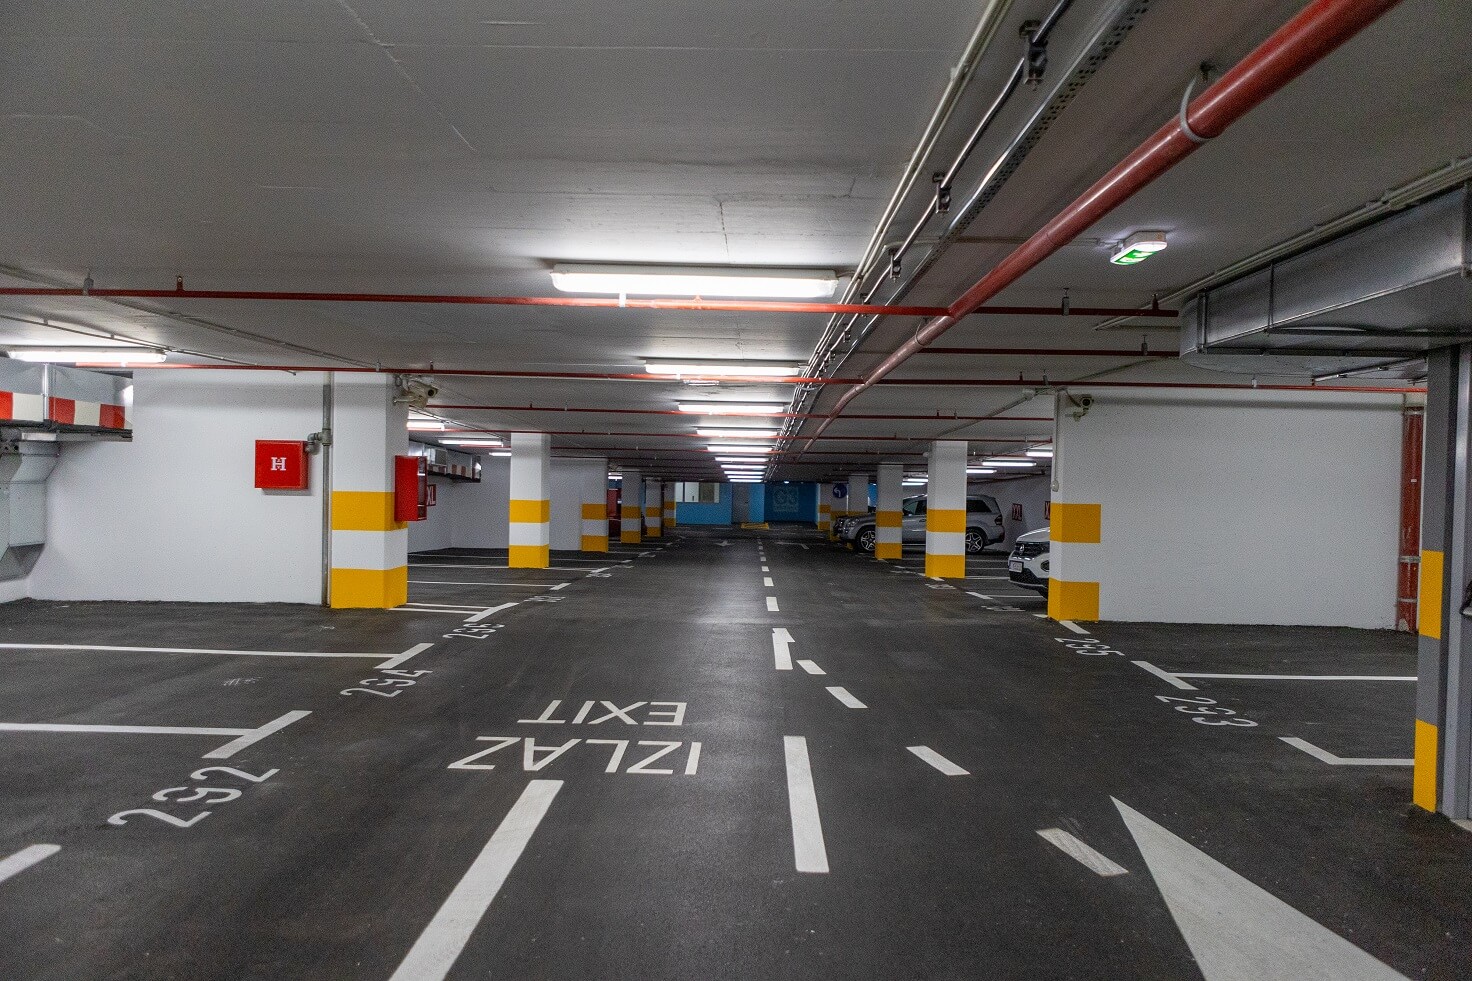 Where to park in Split